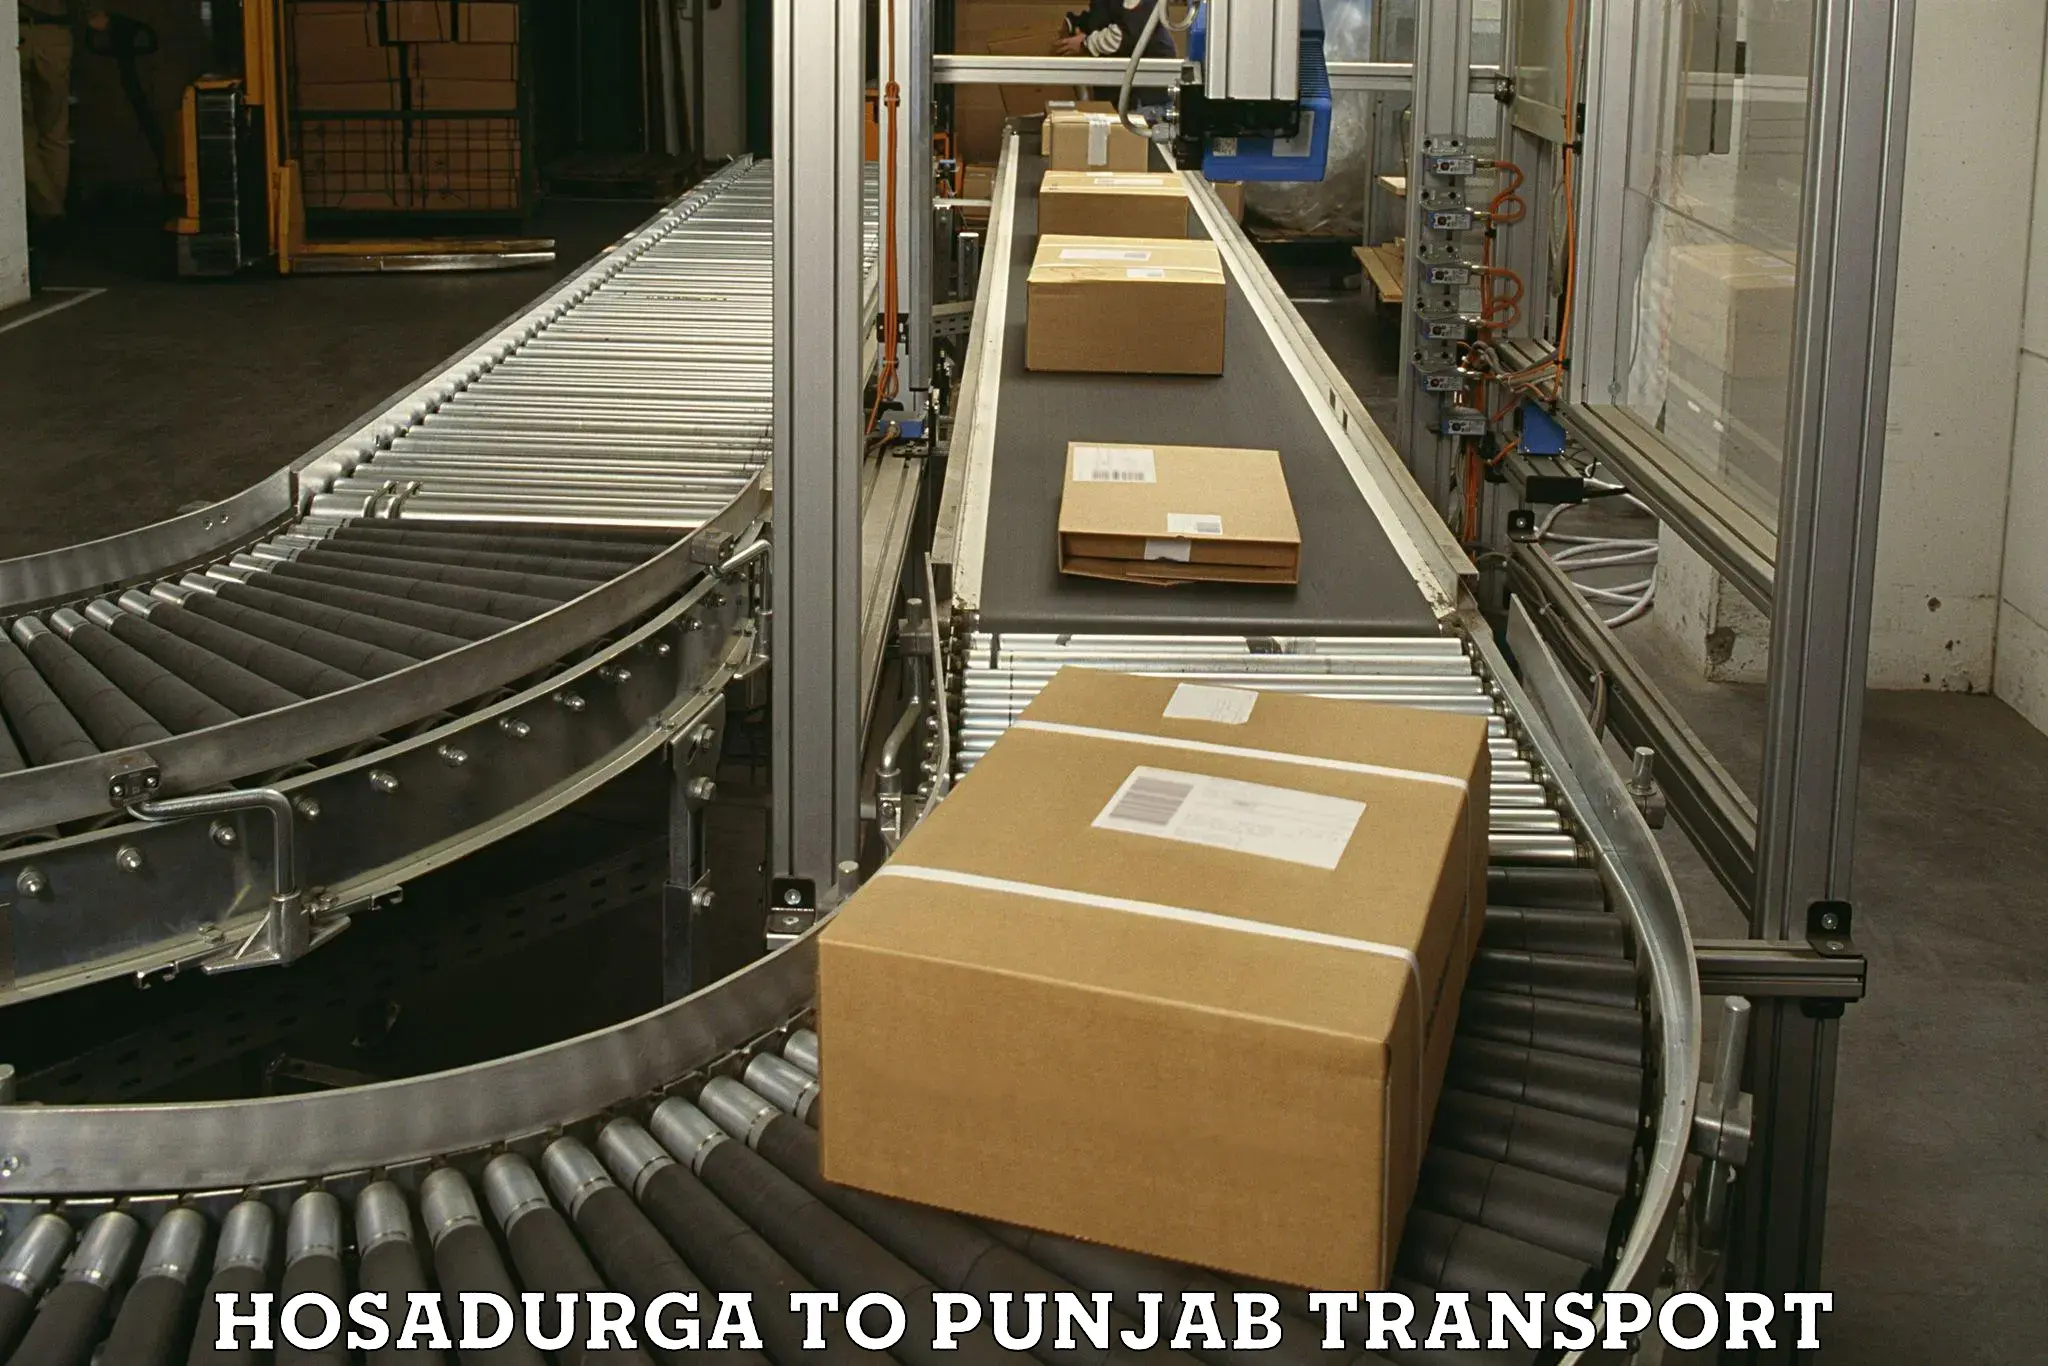 Parcel transport services Hosadurga to Punjab